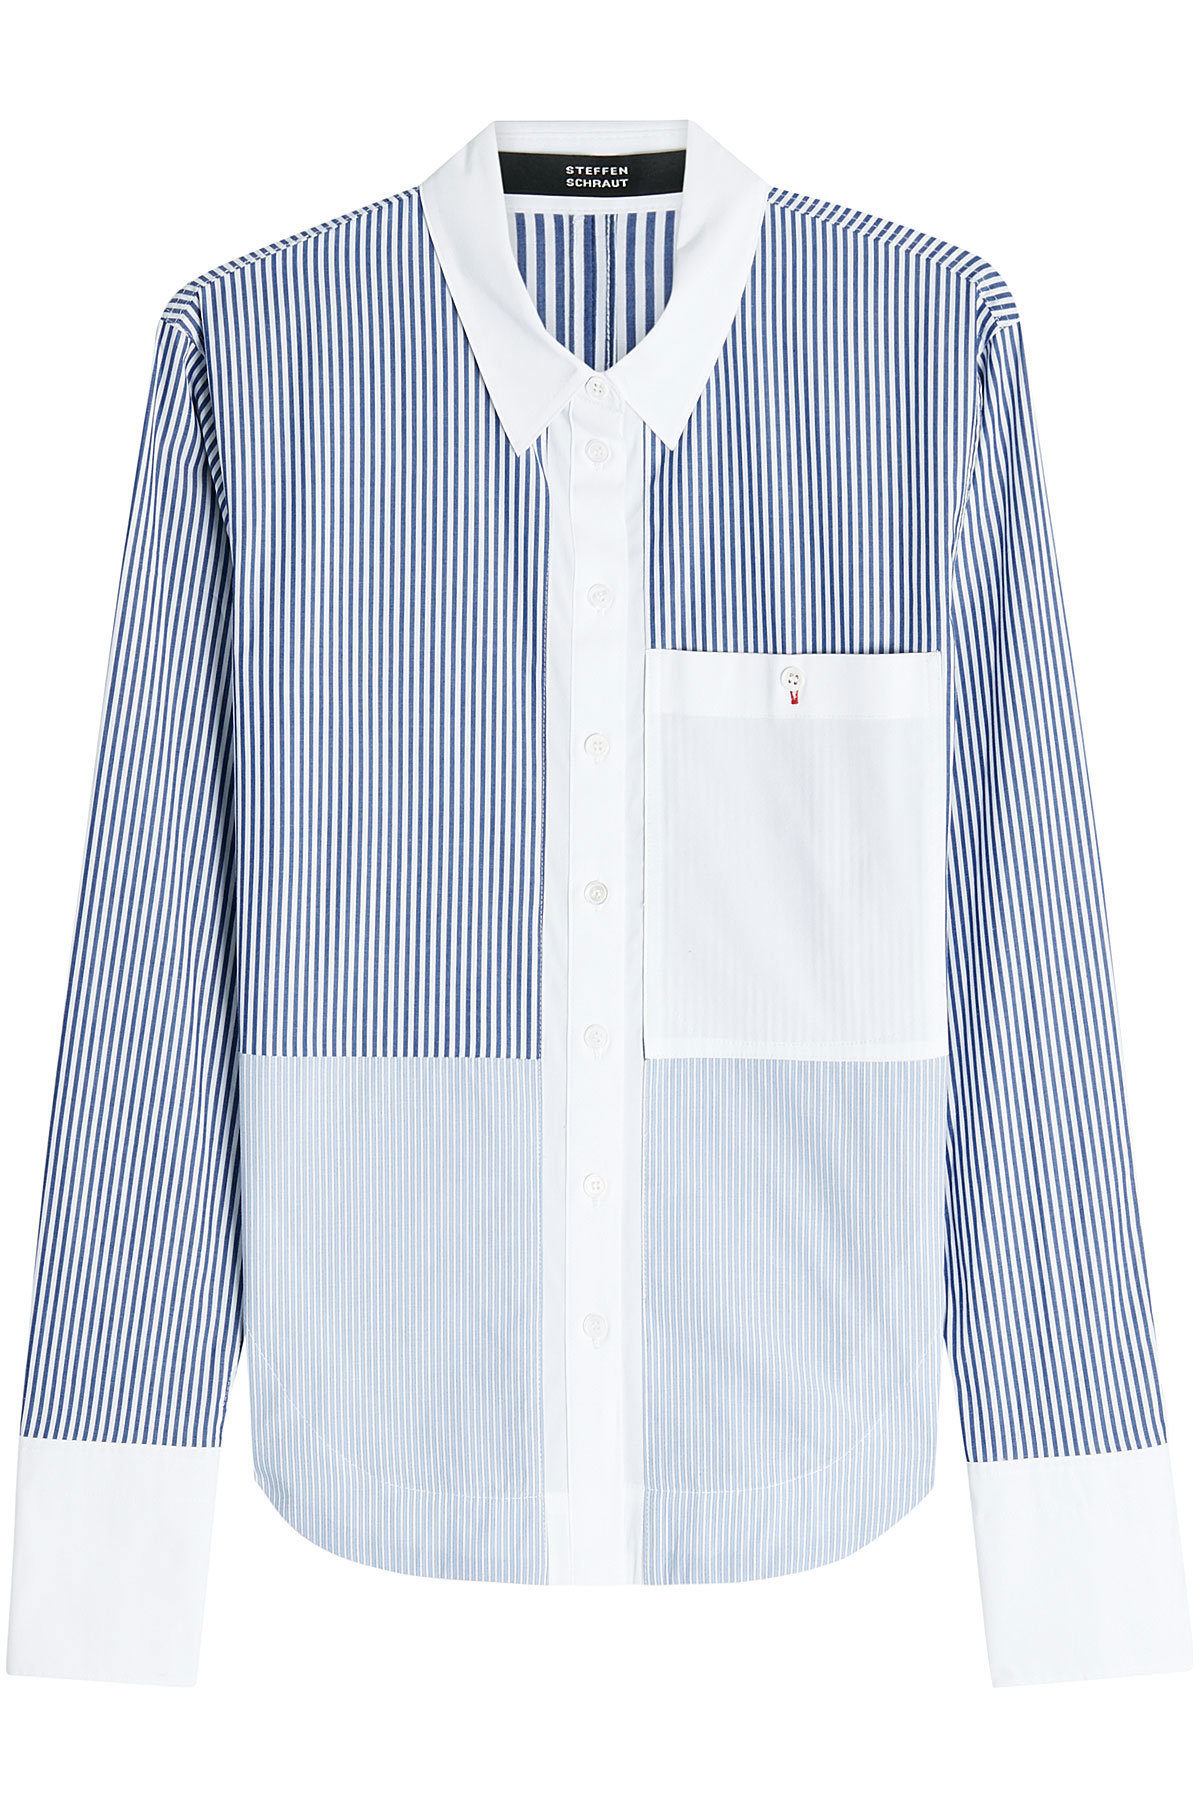 Steffen Schraut - Patchwork Striped Cotton Shirt